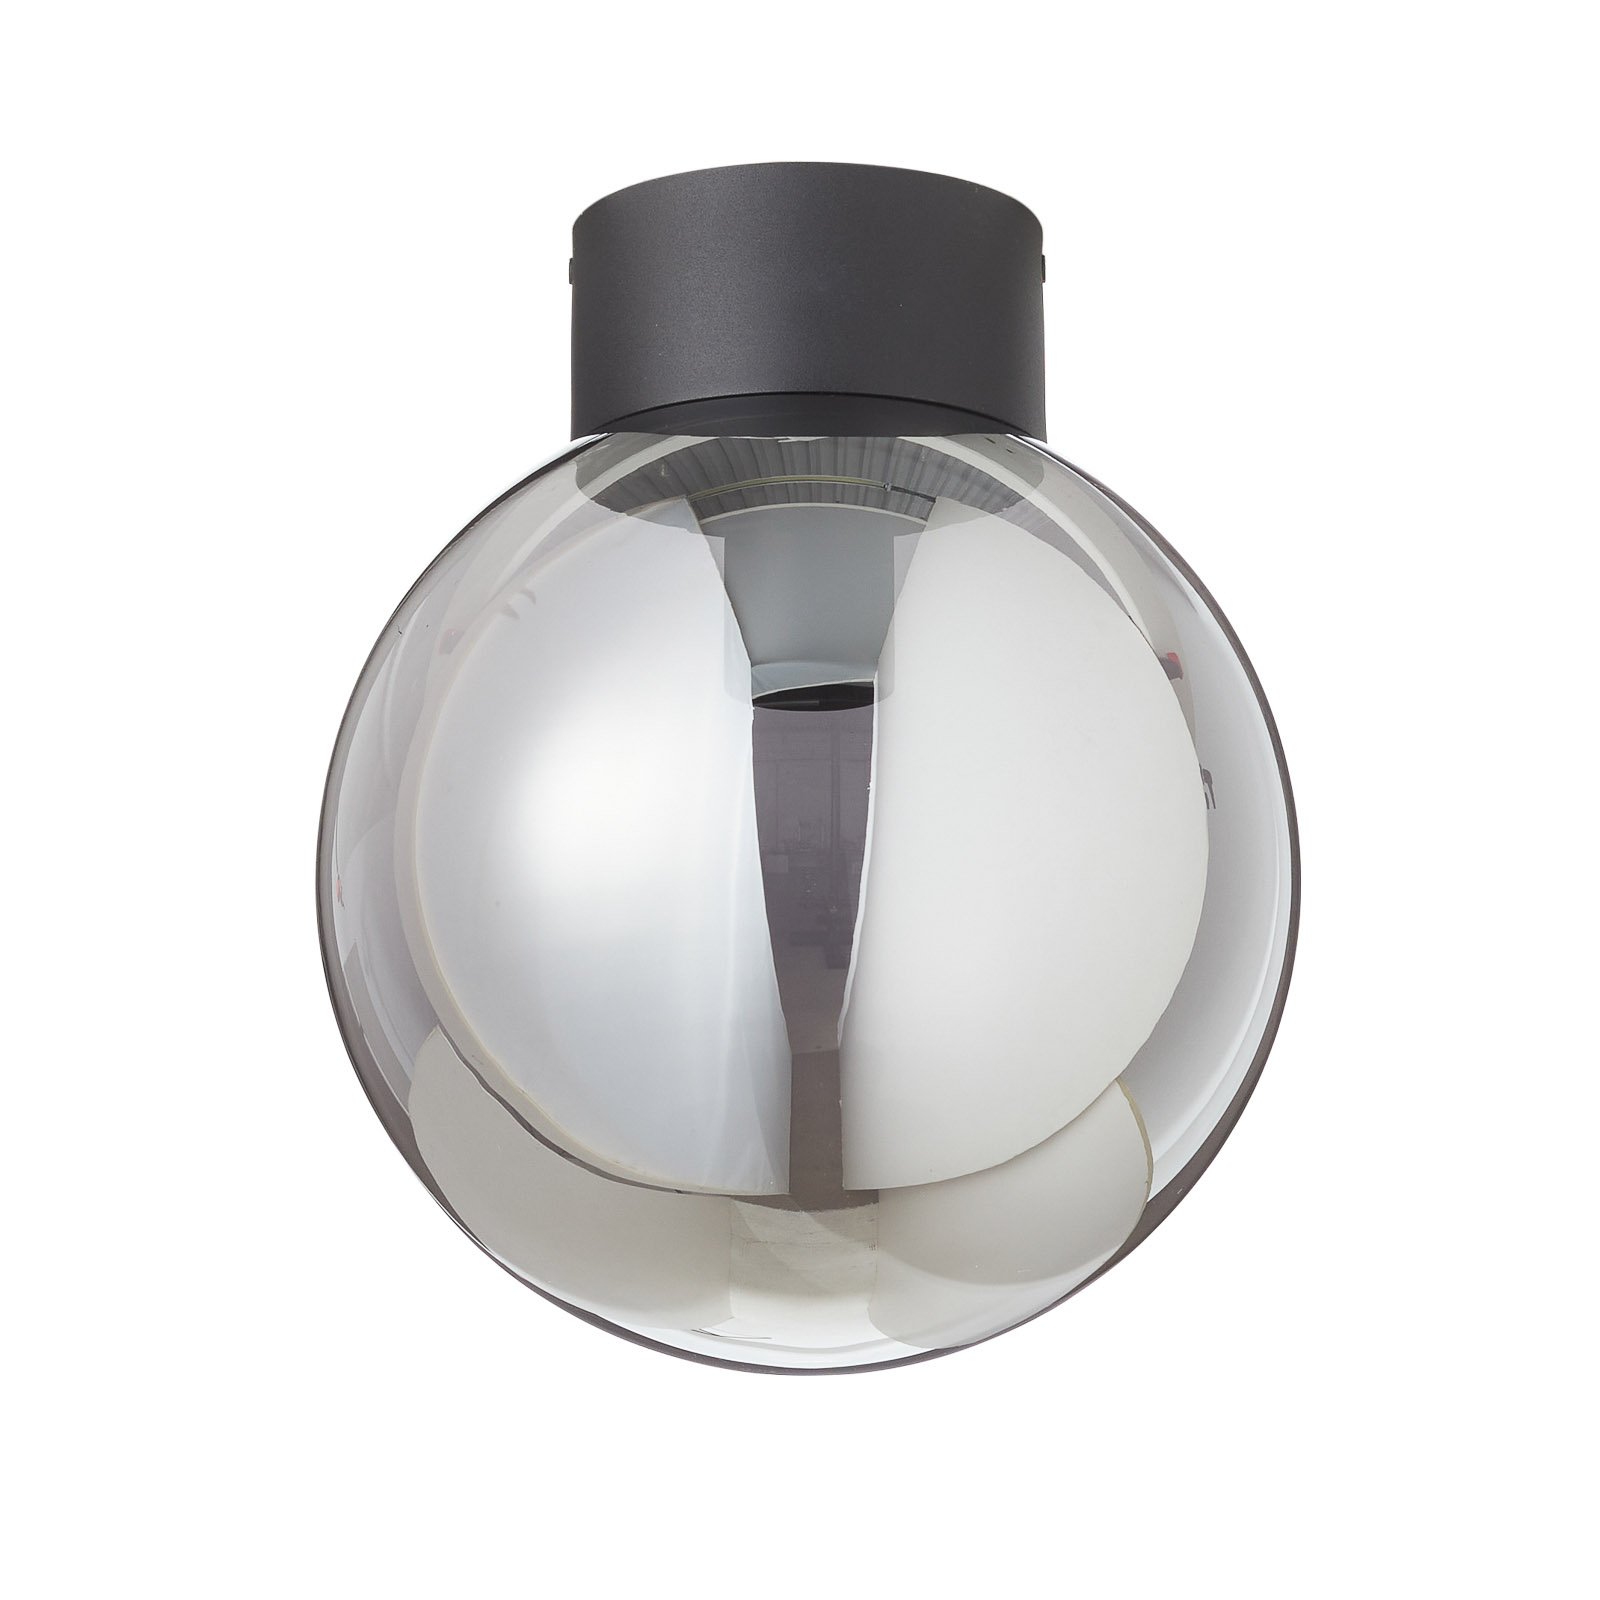 Lubinis šviestuvas "Astro", sferinis stiklas, dūmų pilkos spalvos, Ø 25 cm